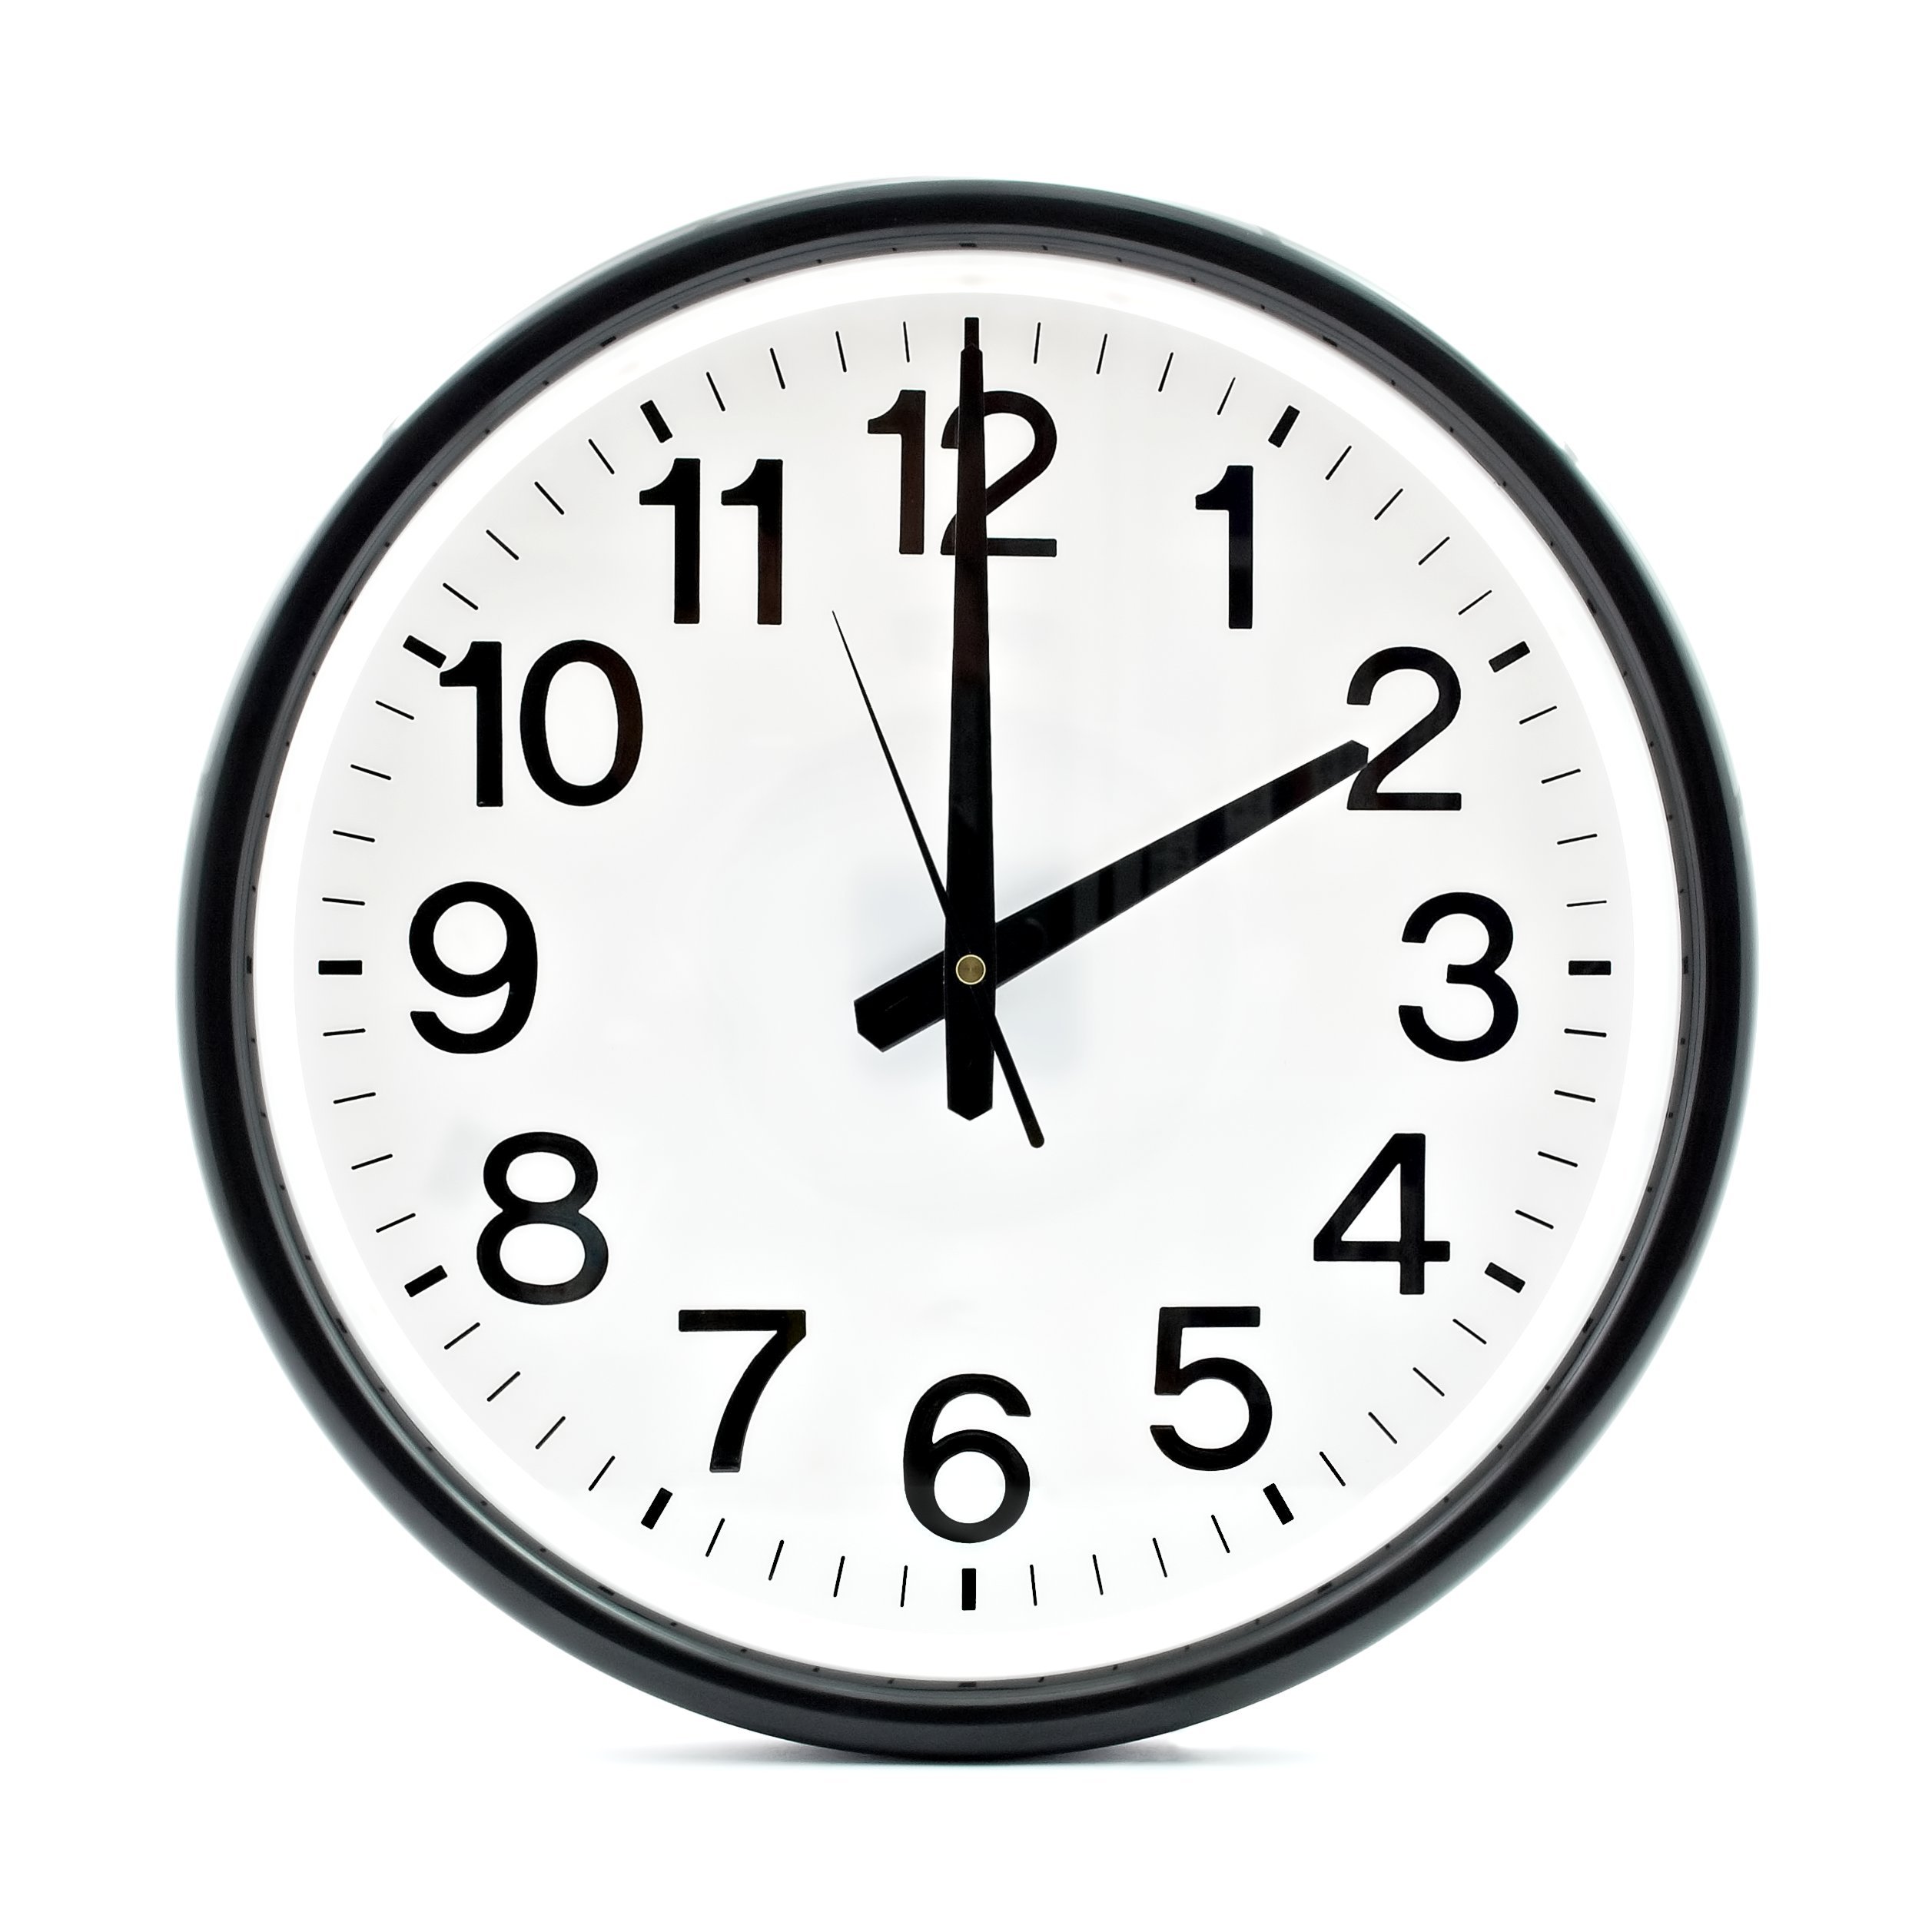 Оставшееся время 0 45. Часы 2 часа. Часы показывают 14:00. Часы два часа дня. Часы показывают 2 часа.